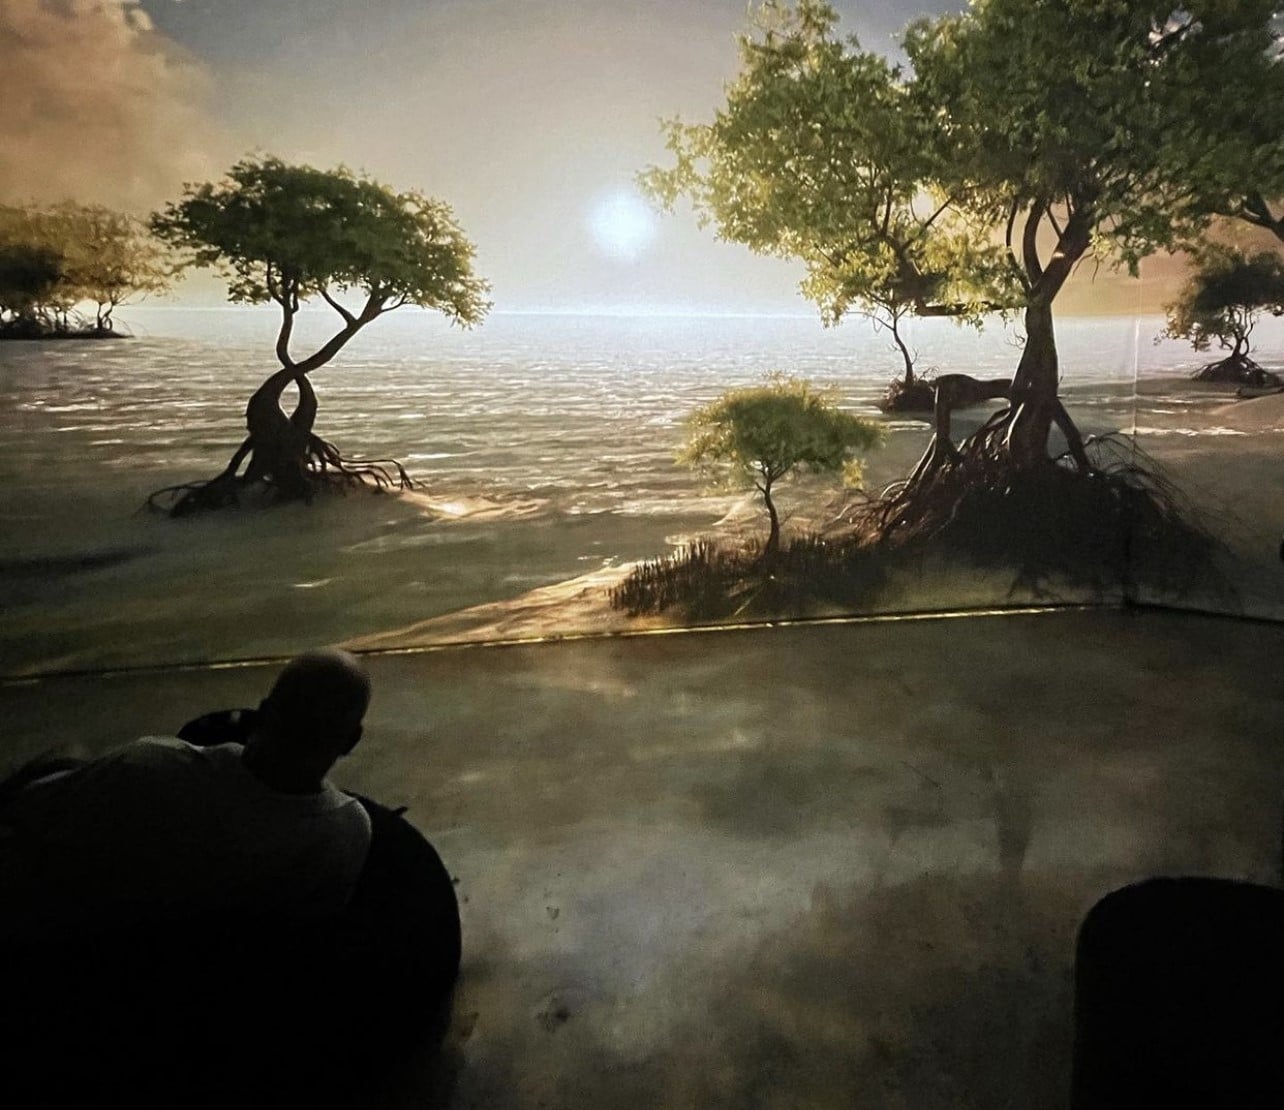 Hidden Worlds projected mangroves